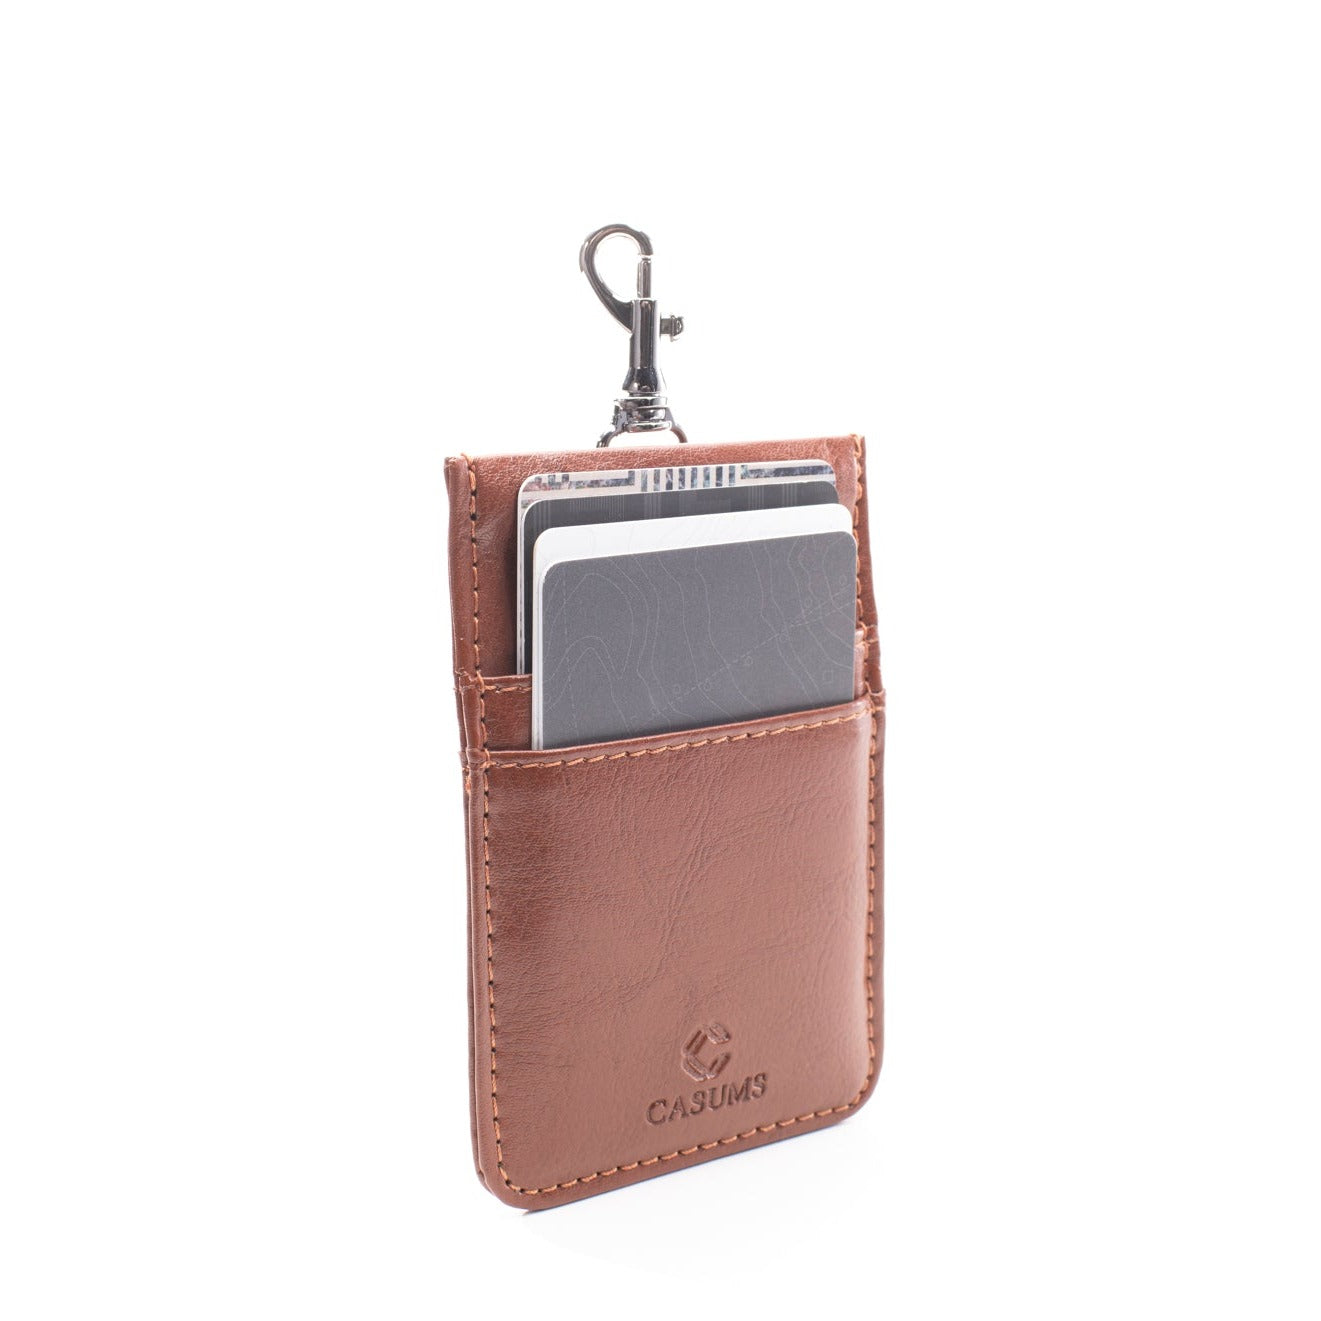 Card Case Wallet - Tan - Gunmetal Toned Hardware